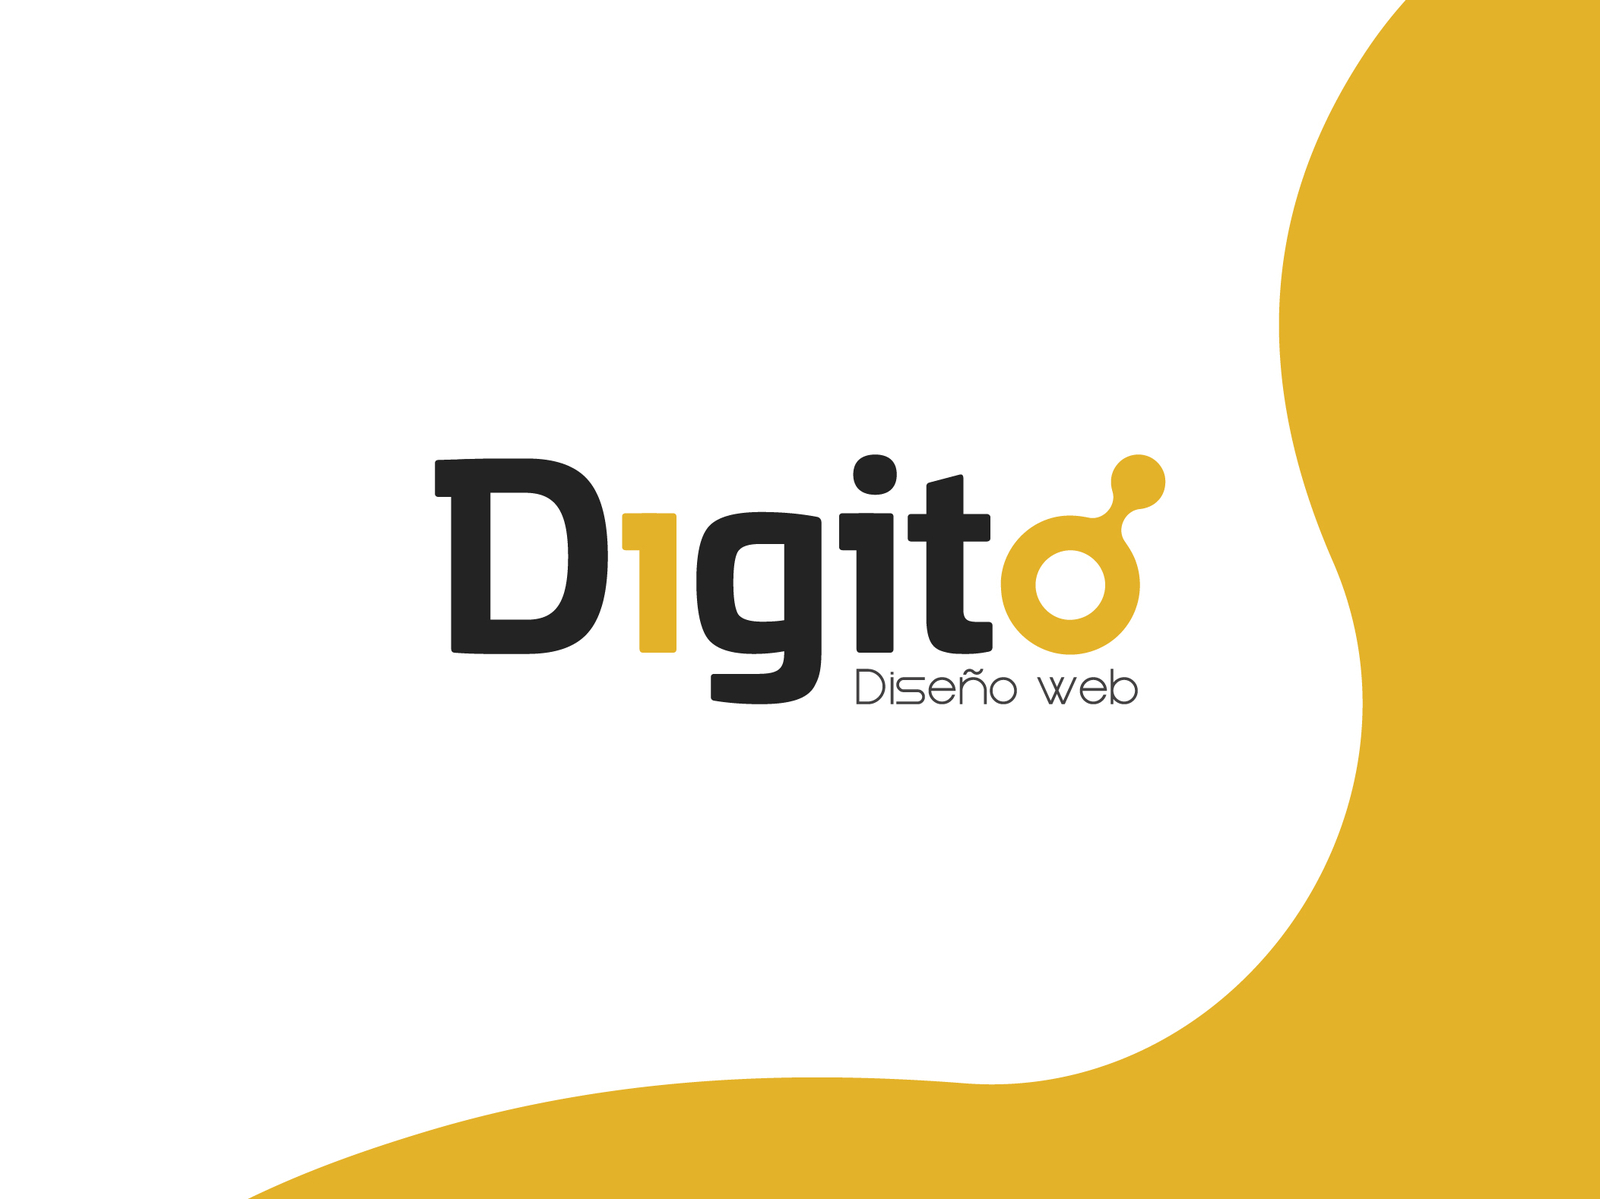 Digit Logo PNG Transparent & SVG Vector - Freebie Supply